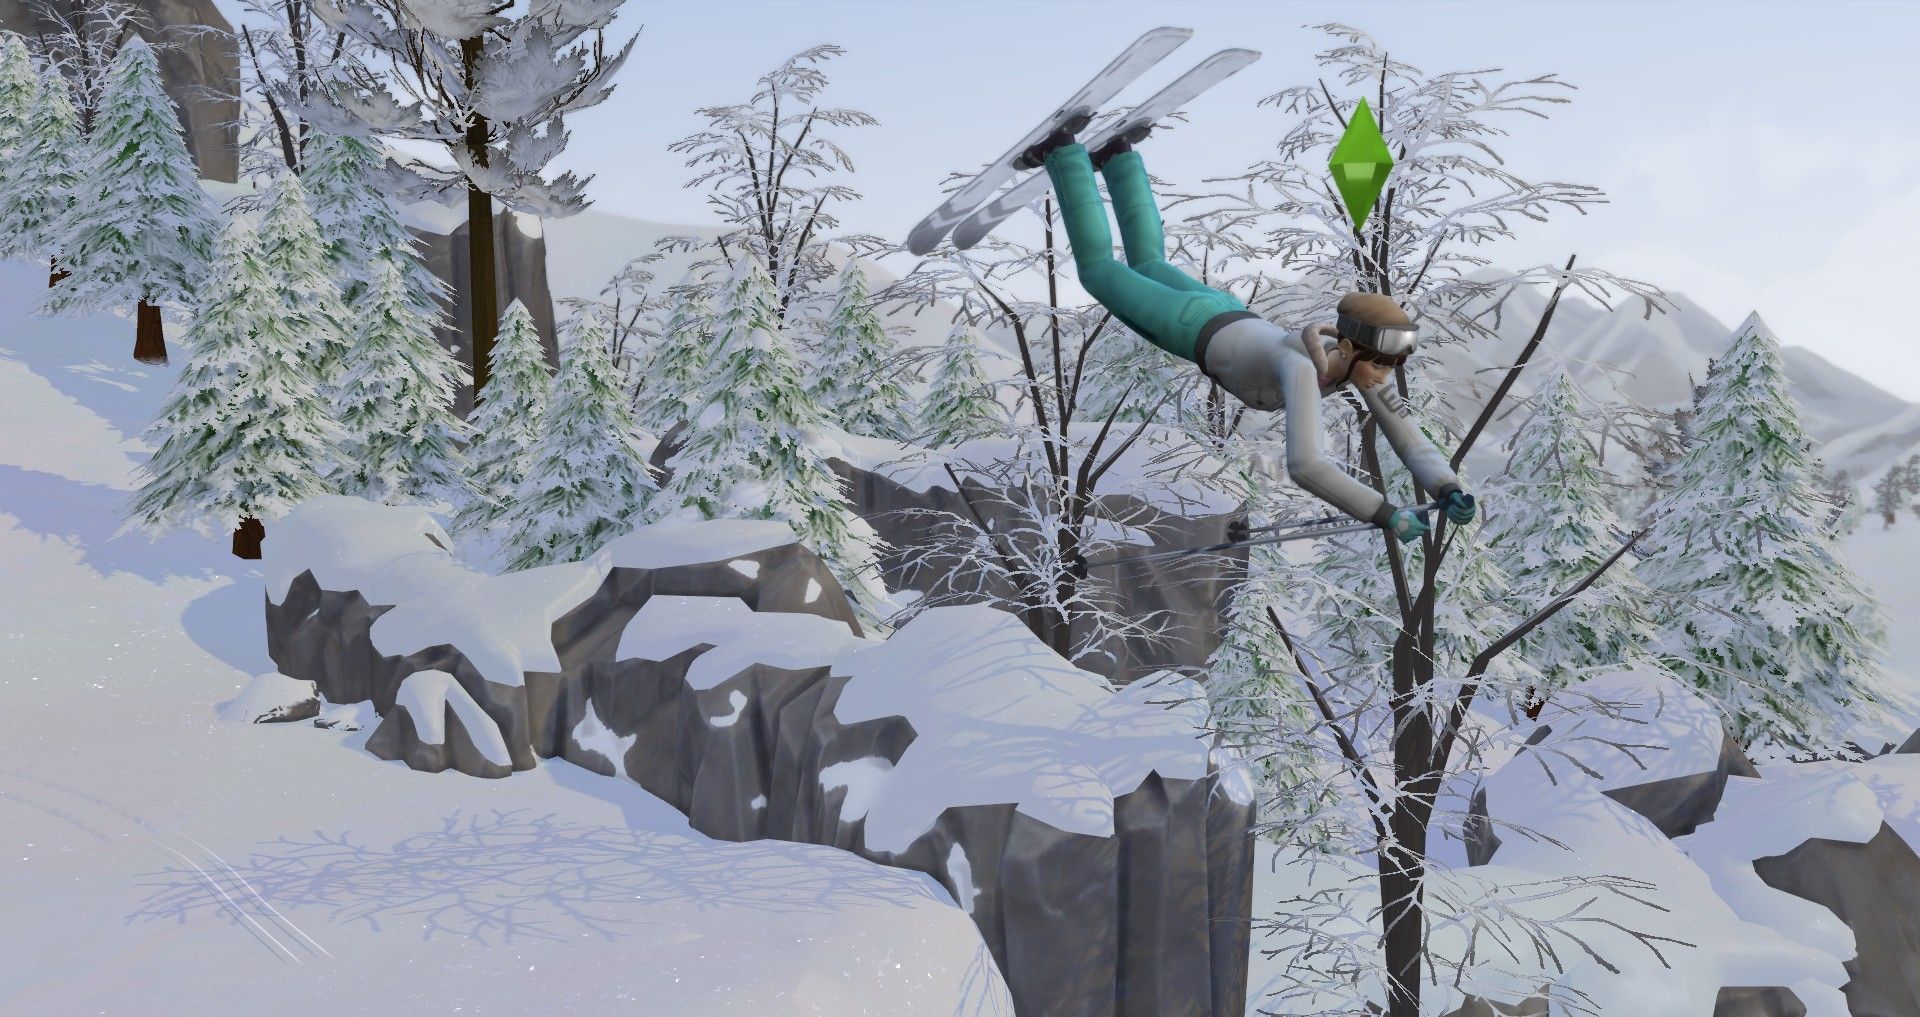 сим выполняет трюк на лыжах навык лыжного спорта в The Sims 4: Снежный отдых